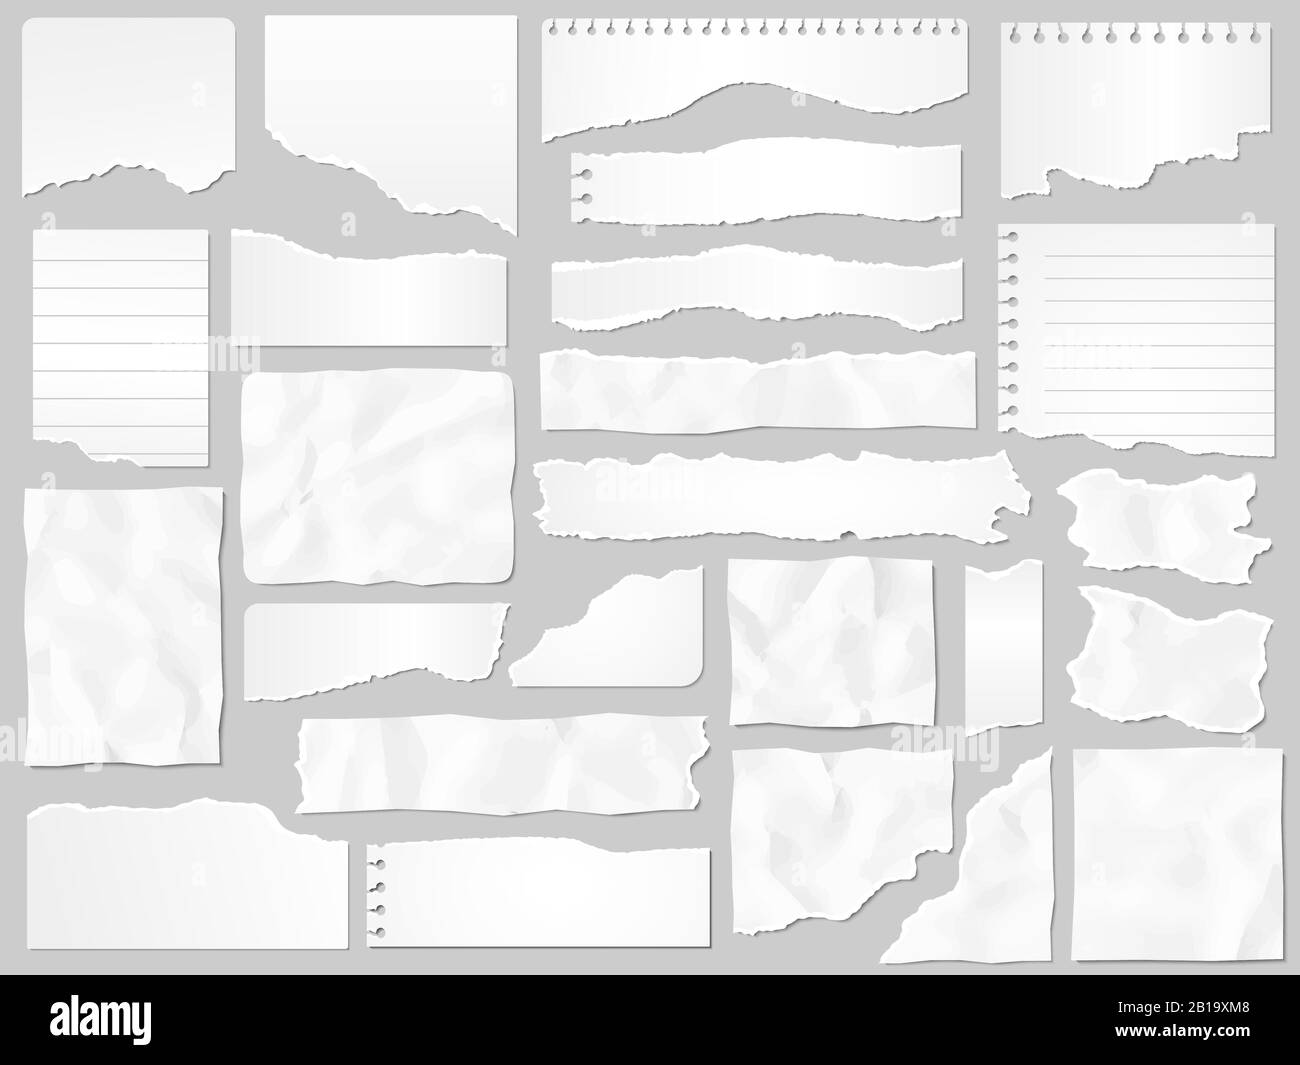 Papierreste. Zerrippte Papiere, zerrissene Seitenteile und Scrapbook-Notiz: Vektorgrafiksatz für Papierteile Stock Vektor